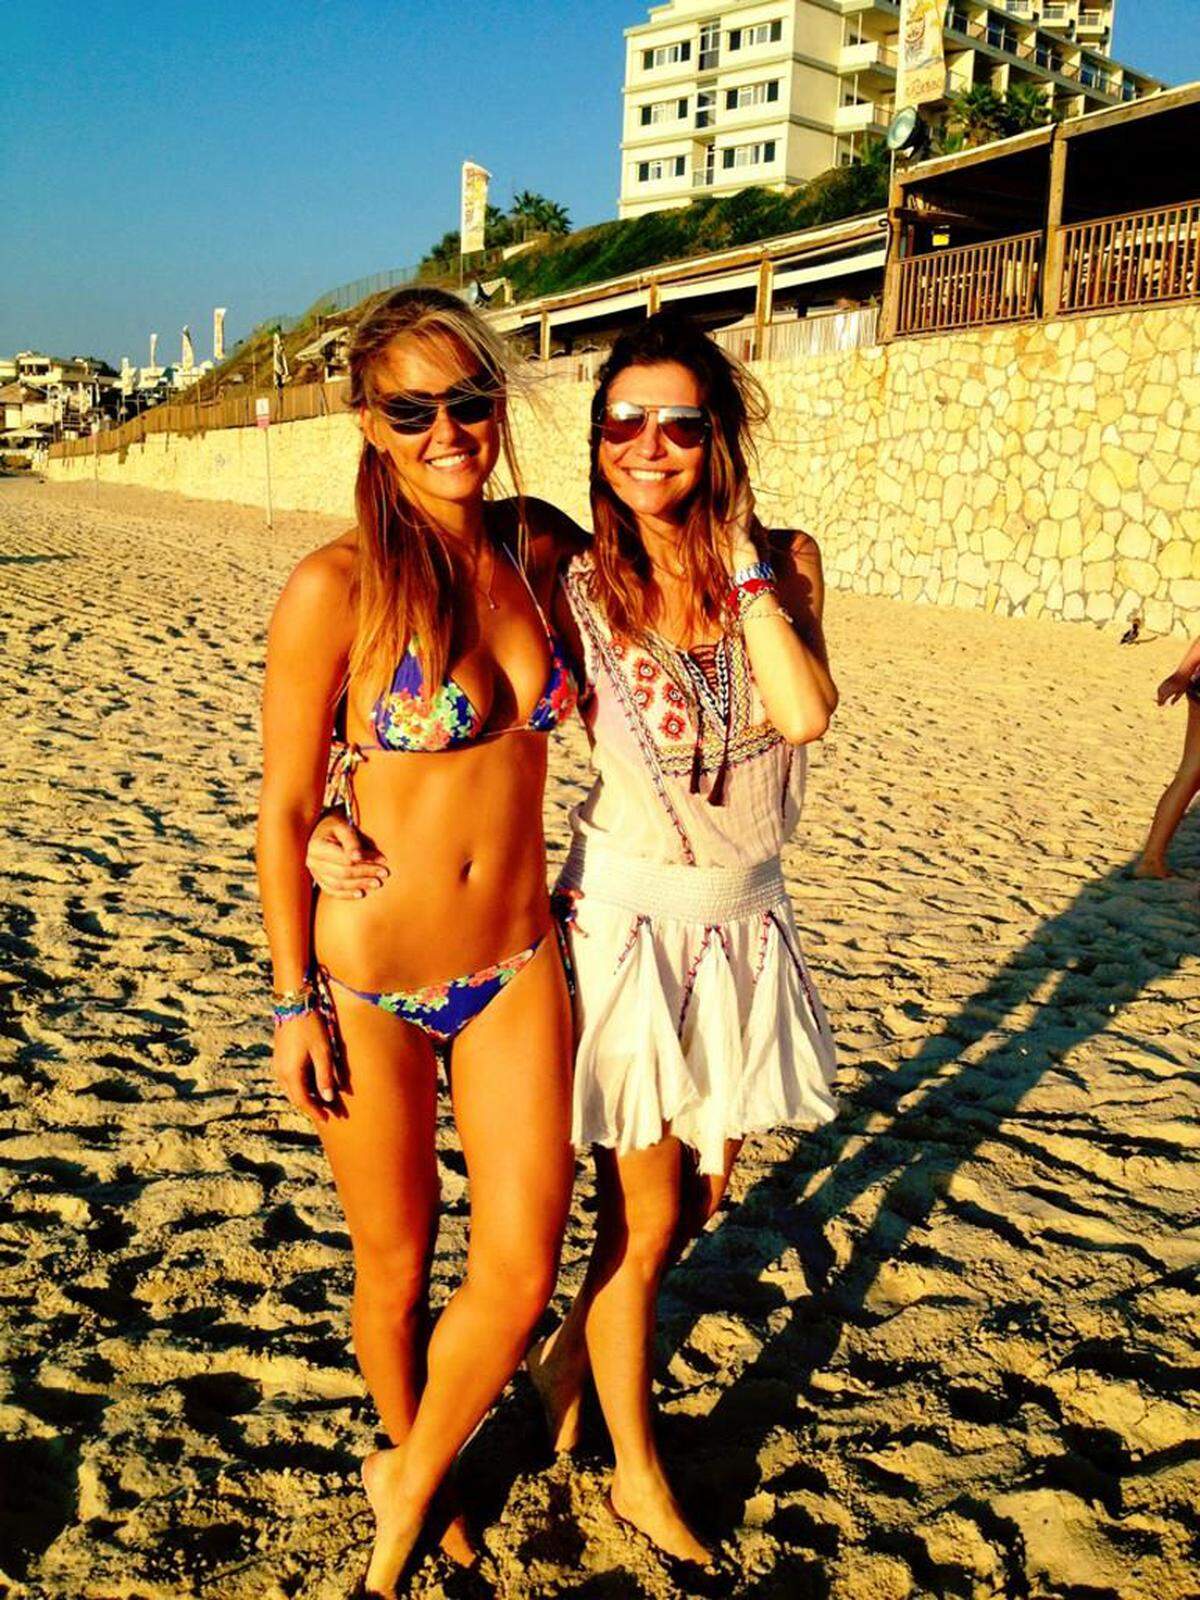 Das Posen am Strand haben die Topmodels perfektioniert. So etwa Bar Refaeli, die die Sonne mit ihrer Schwester genießt.